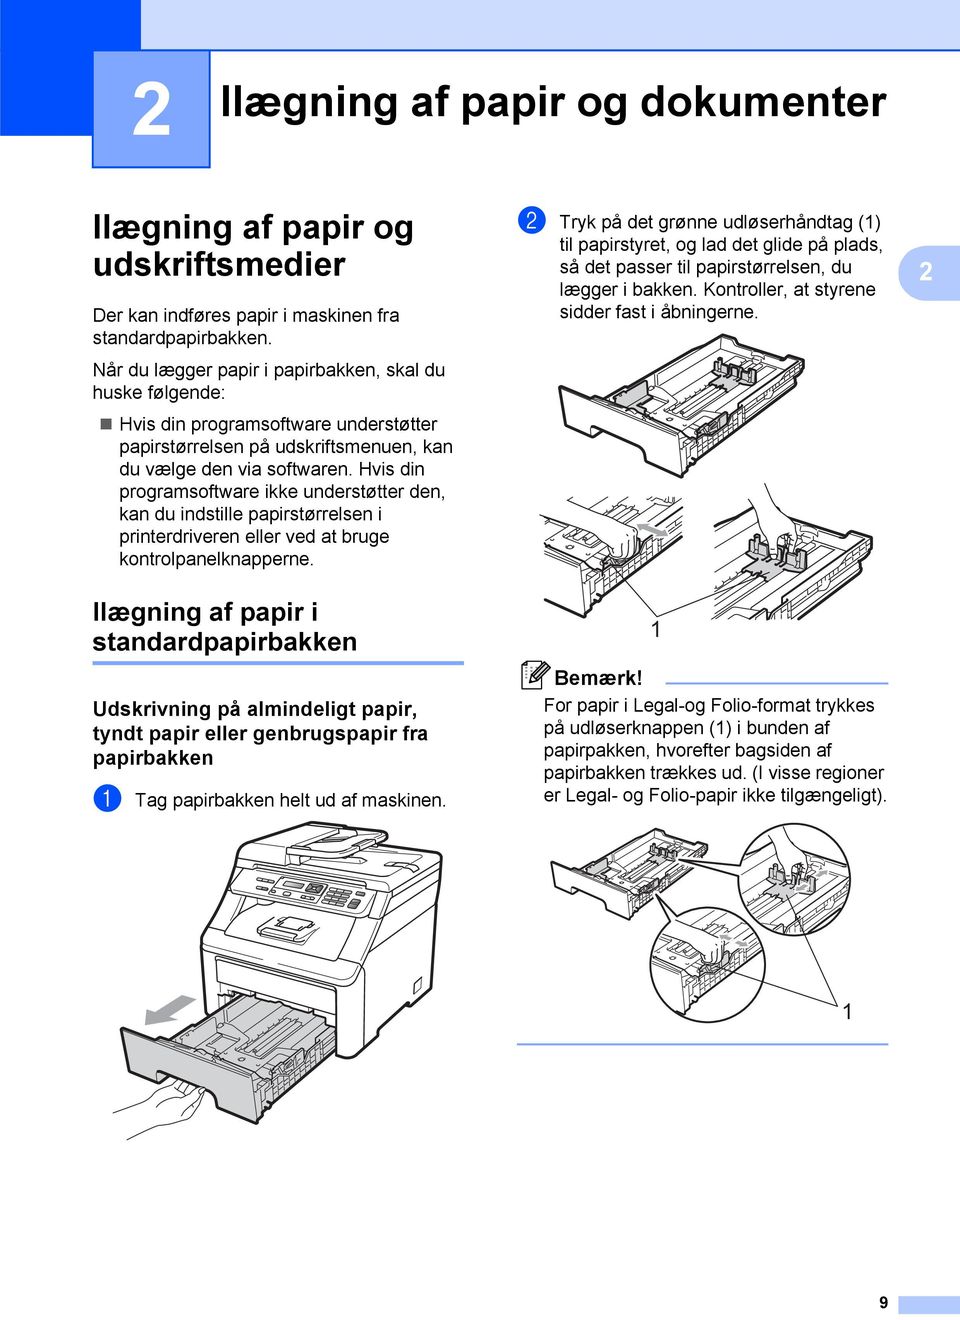 Hvis din programsoftware ikke understøtter den, kan du indstille papirstørrelsen i printerdriveren eller ved at bruge kontrolpanelknapperne.